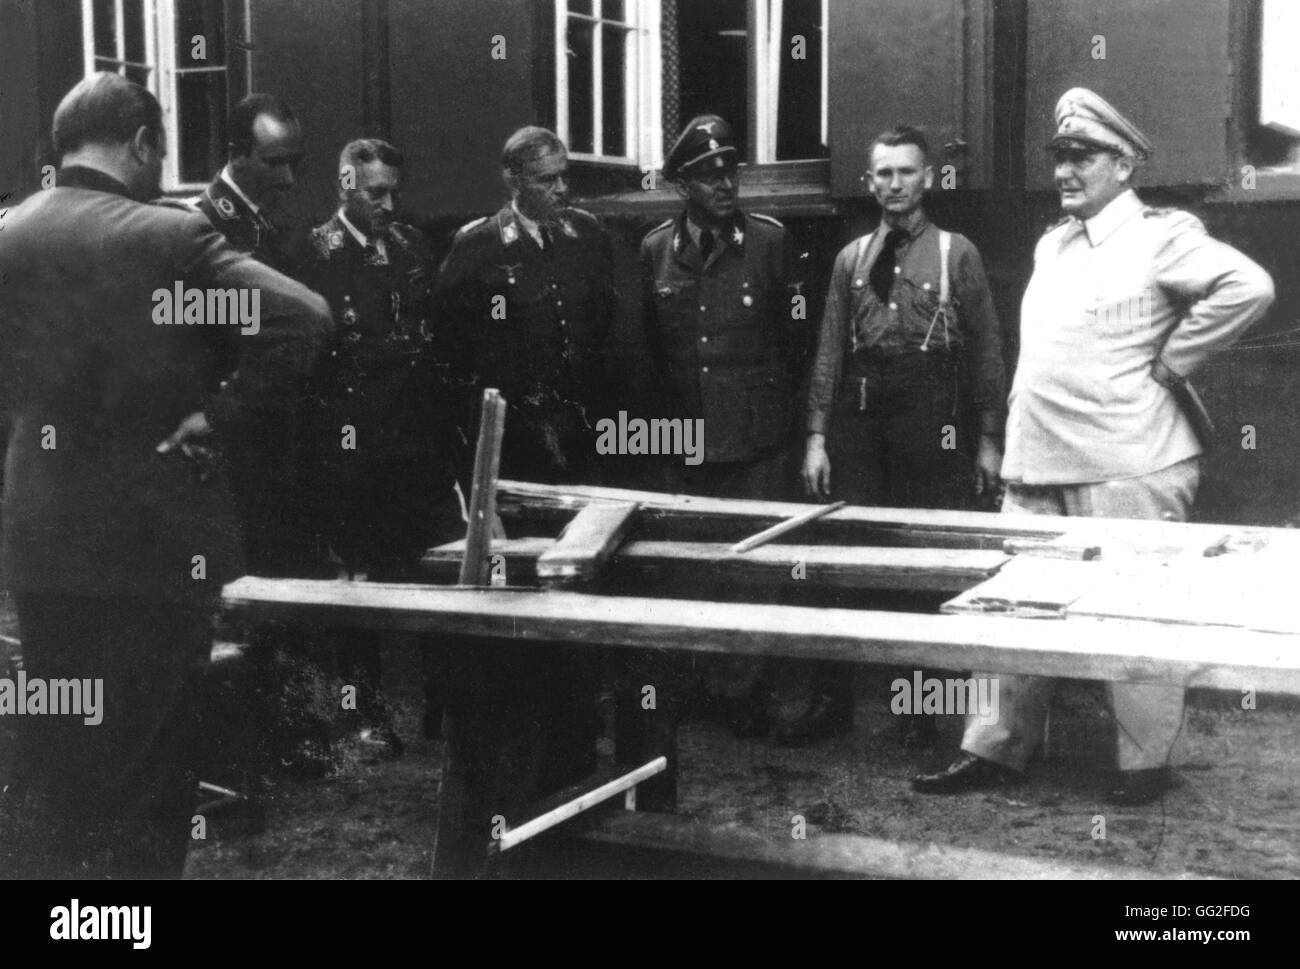 Después de la tentativa de asesinato contra Hitler. Göering, Schaub (3ª en la r.), Koller (3ª en la l.) y Fegelein mira el sitio. 20 de julio de 1944 Alemania - Segunda Guerra Mundial Foto de stock